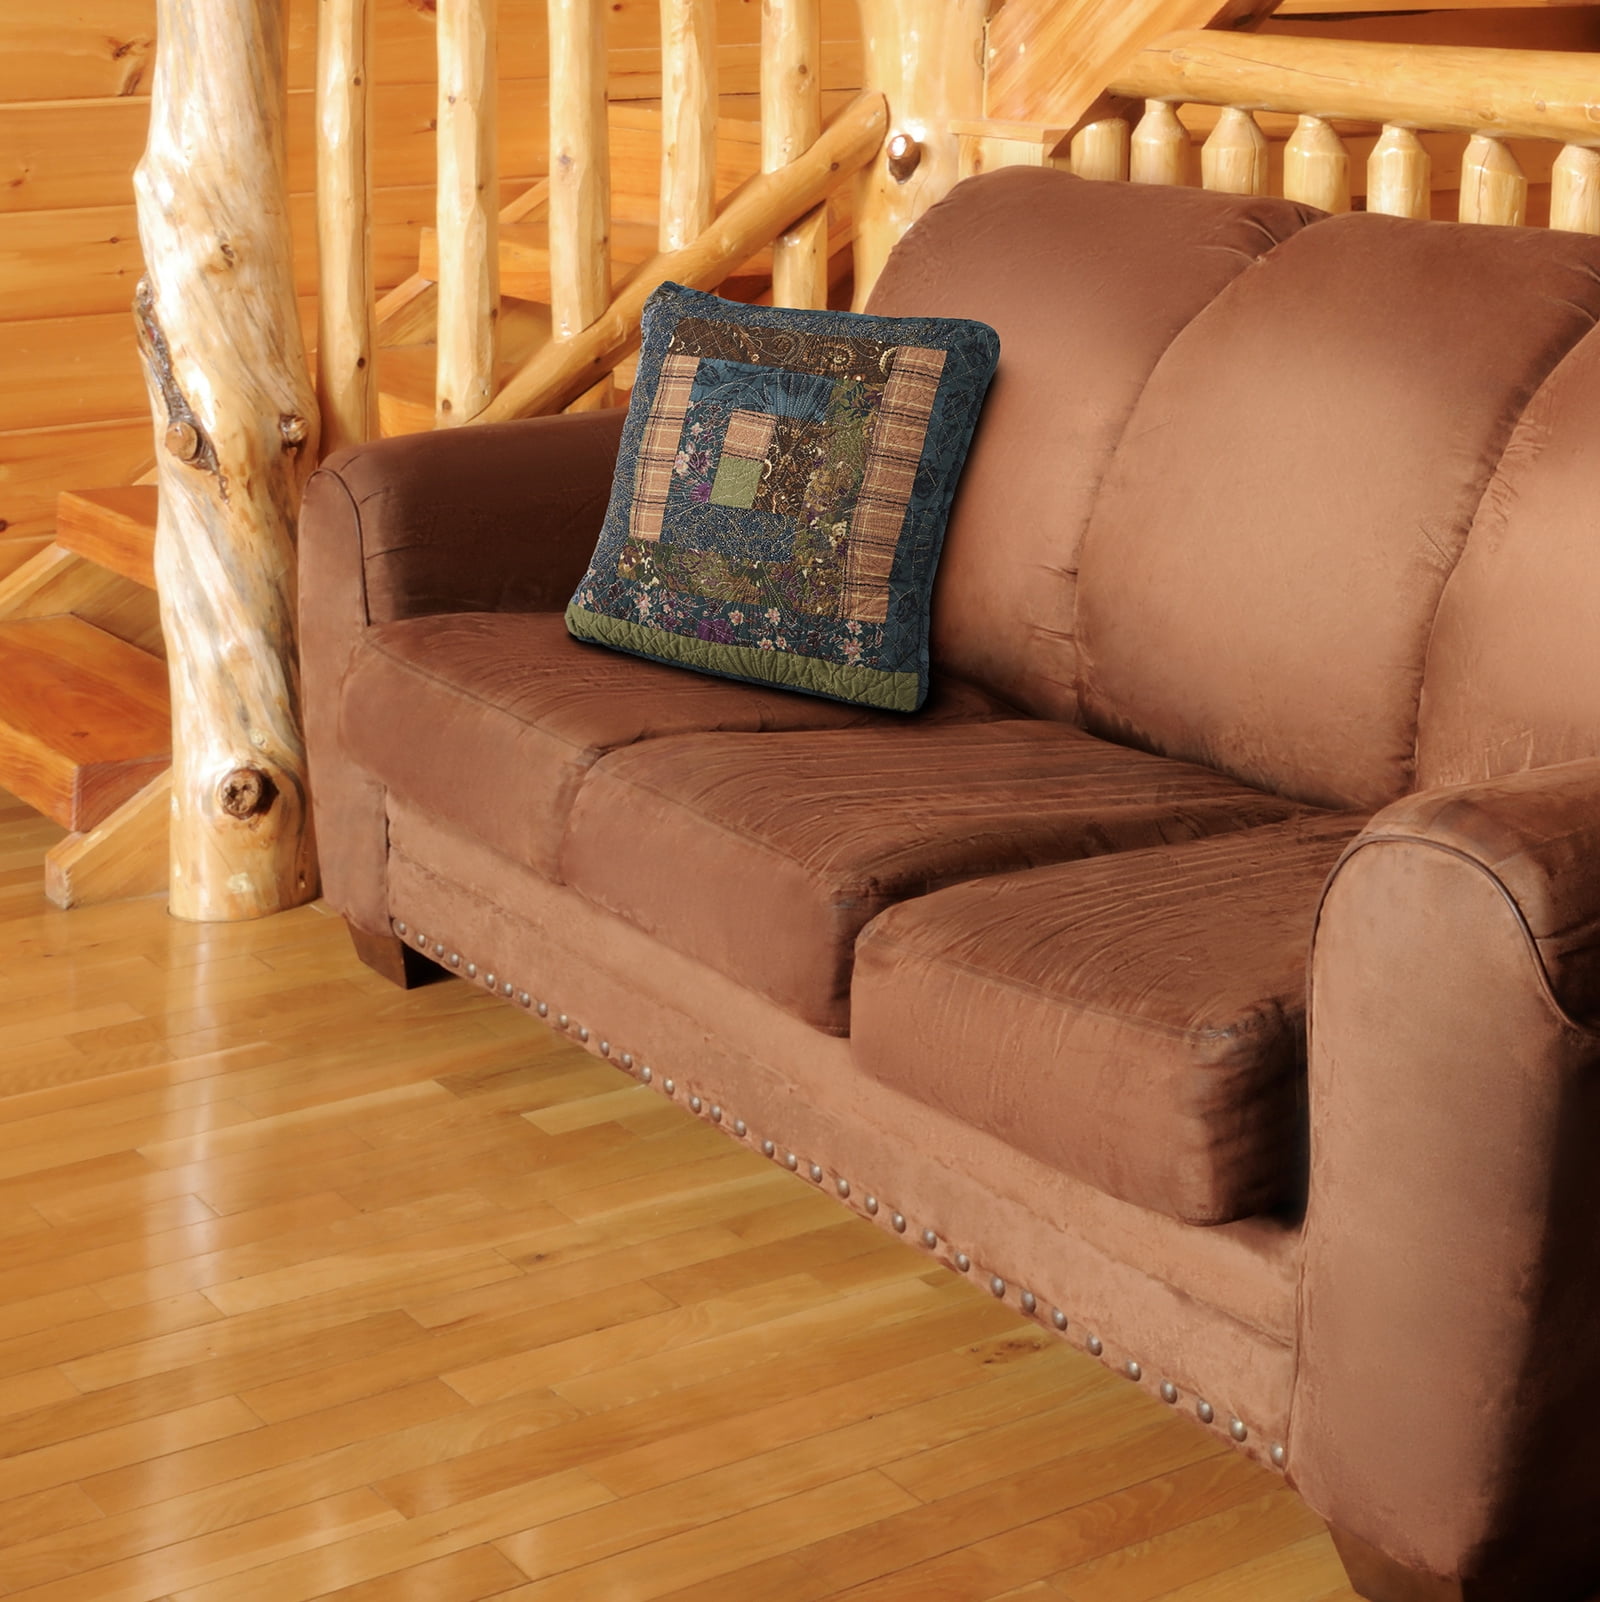 66001 16 X 16 In. Cabin Raising Pine Cone Decorative Pillow, Multi Color